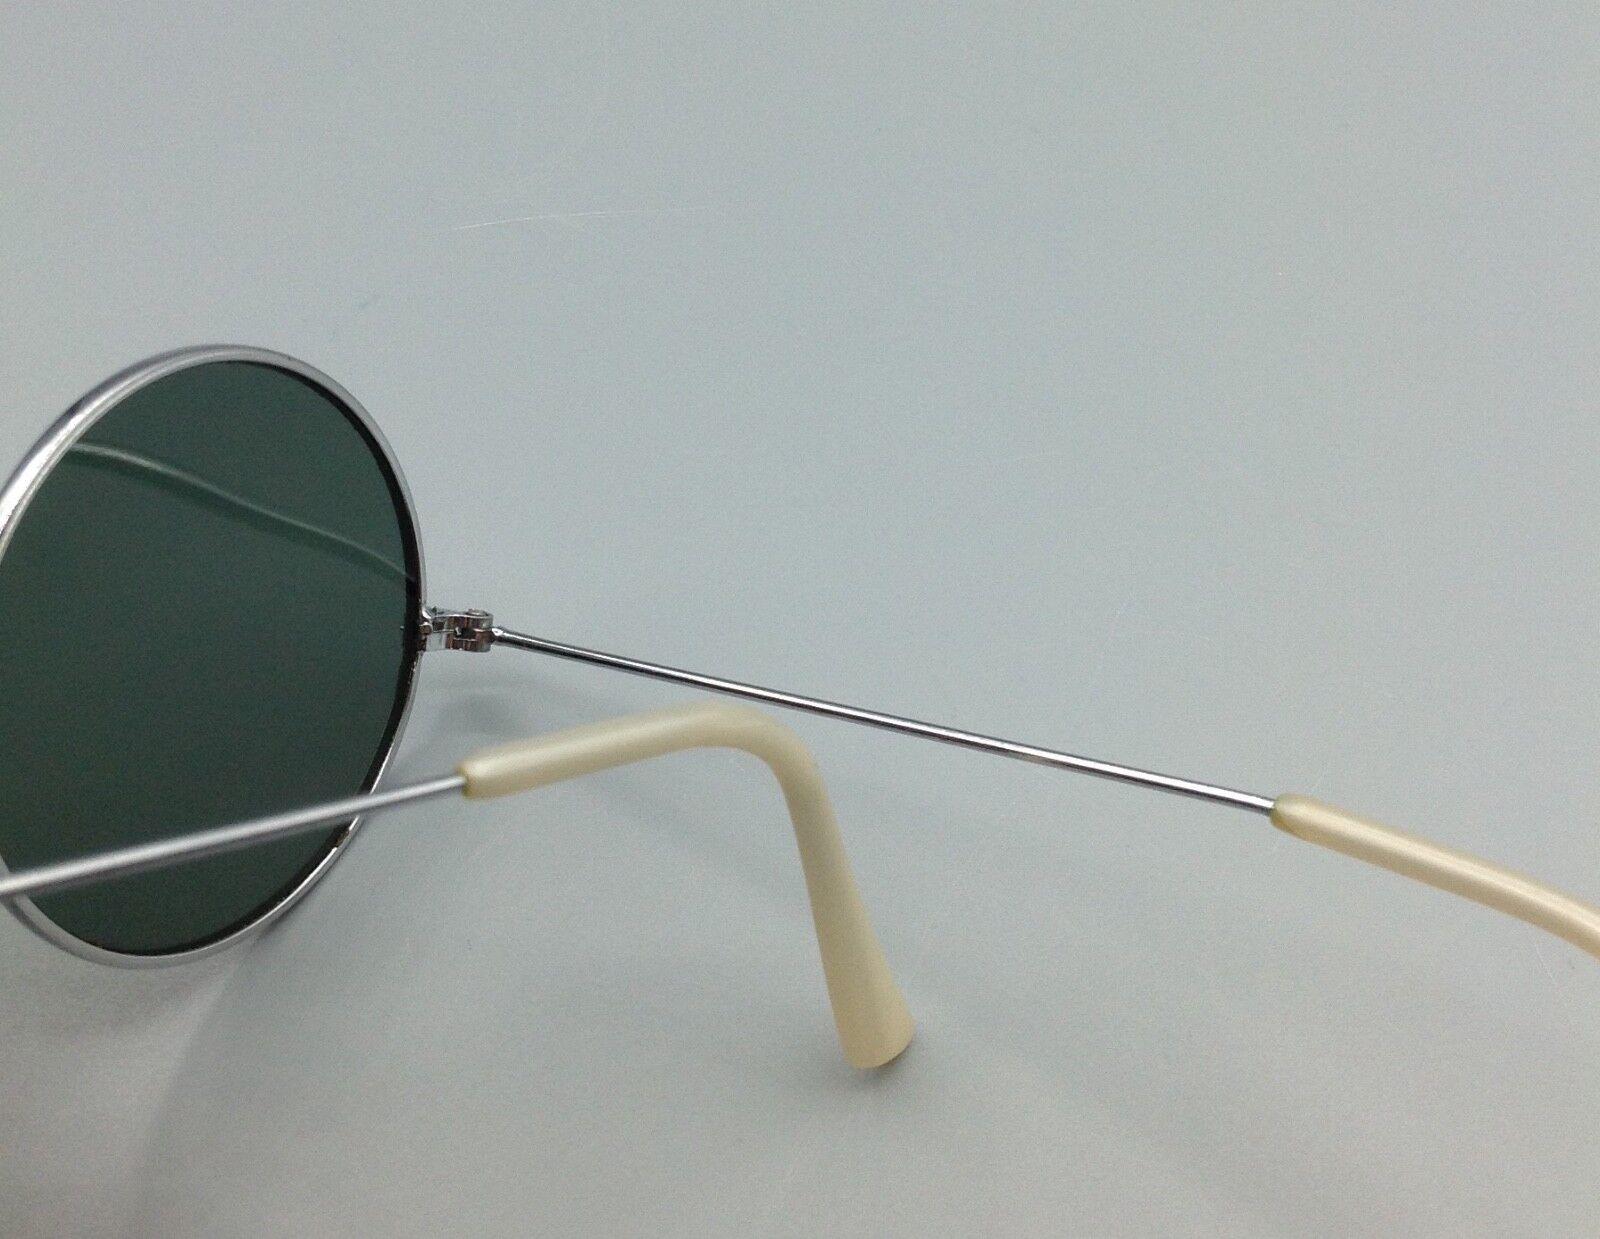 Vintage sunglasses occhiale da sole sonnenbrillen lunettes